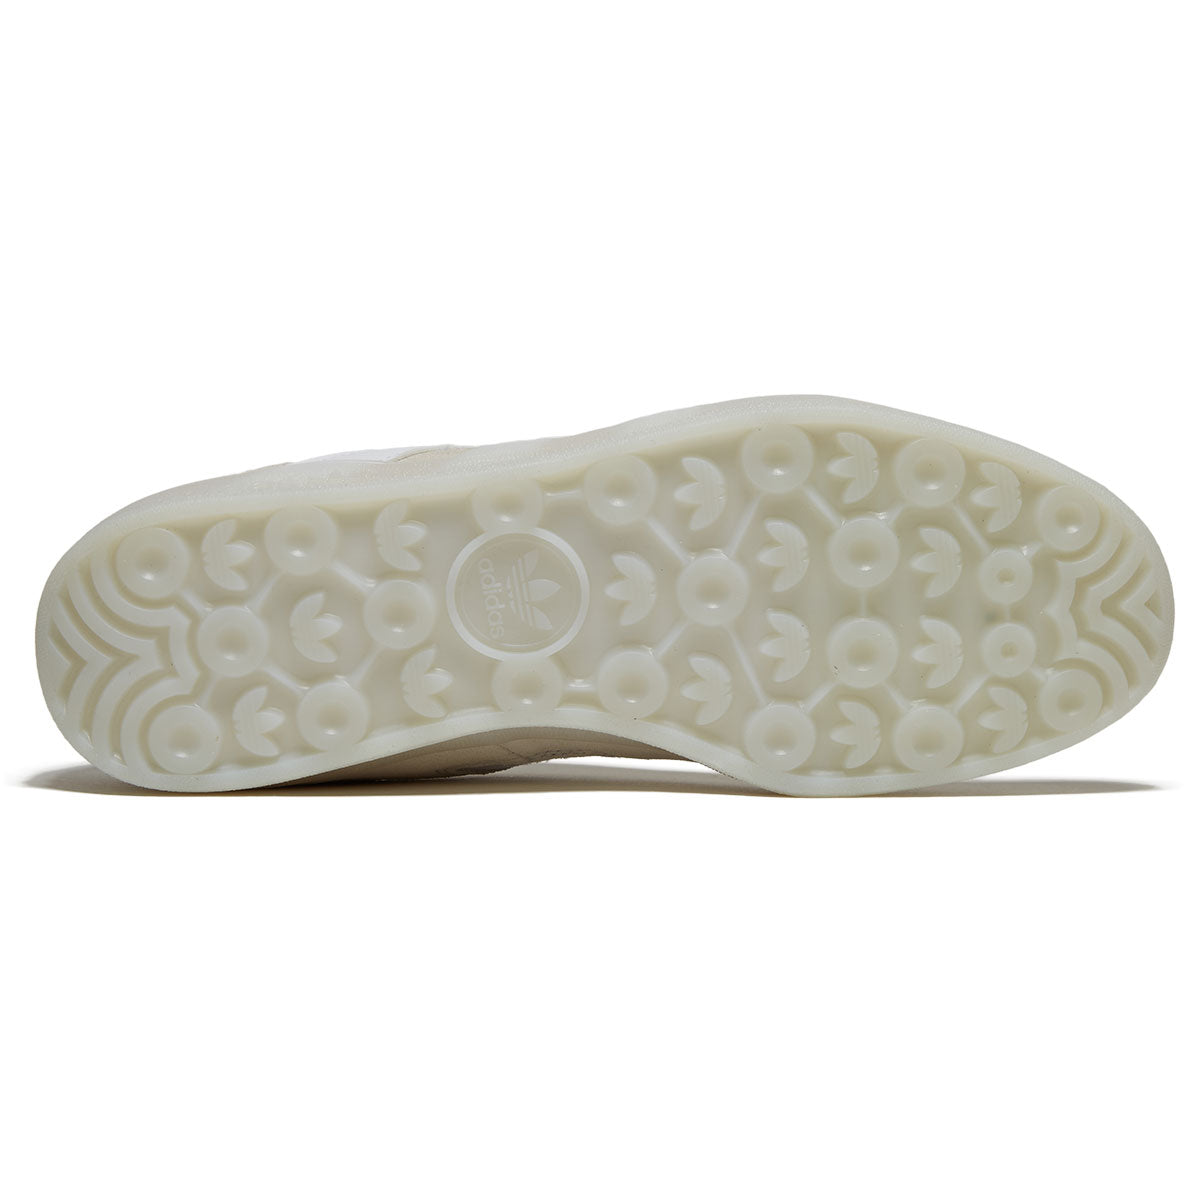 Adidas Aloha Super Shoes - Crystal White/White/Bluebird image 4